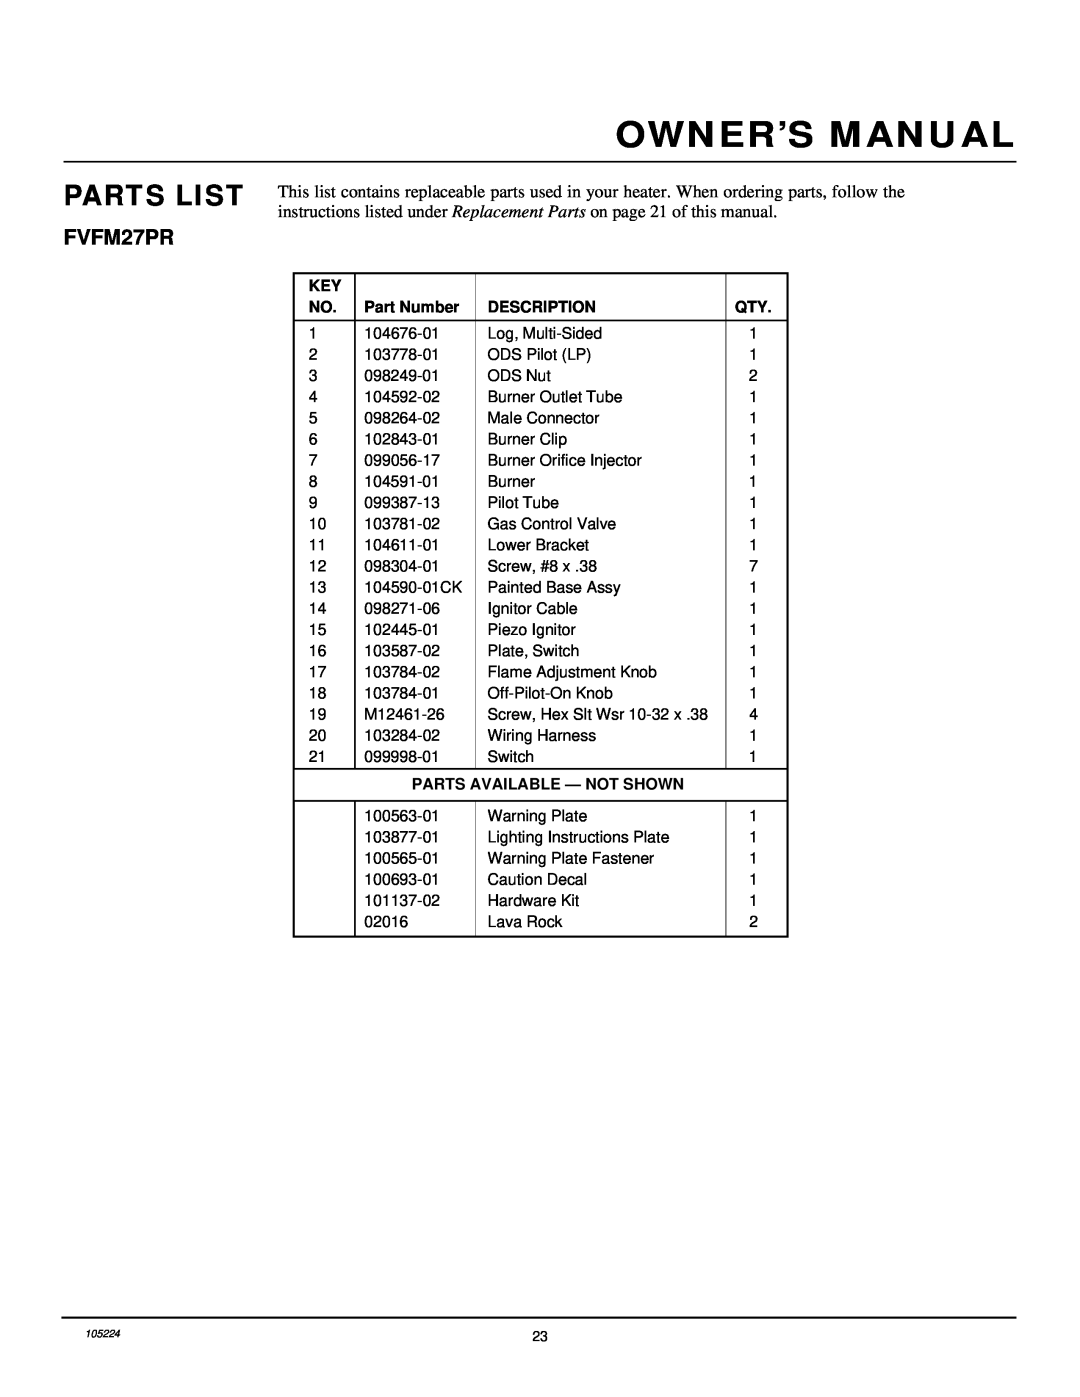 FMI FVFM27PR installation manual Parts List, Part Number, Description, Parts Available - Not Shown 